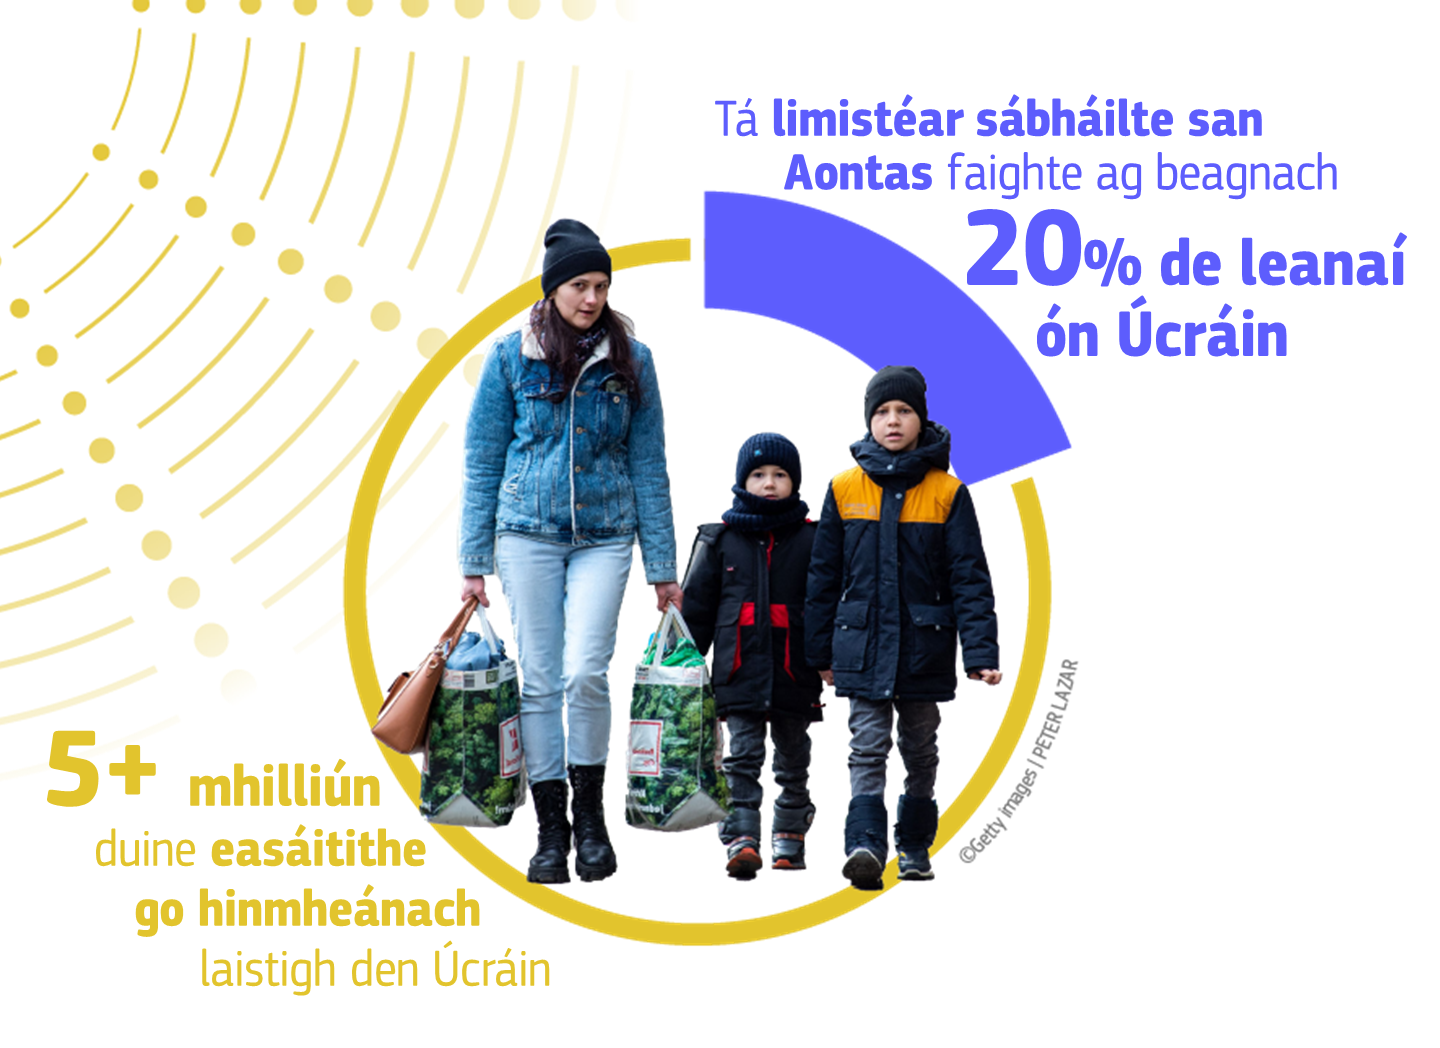 5.4 million Individuals internally displaced within Ukraine, 20% Ukraine's children have found a safe haven in the EU